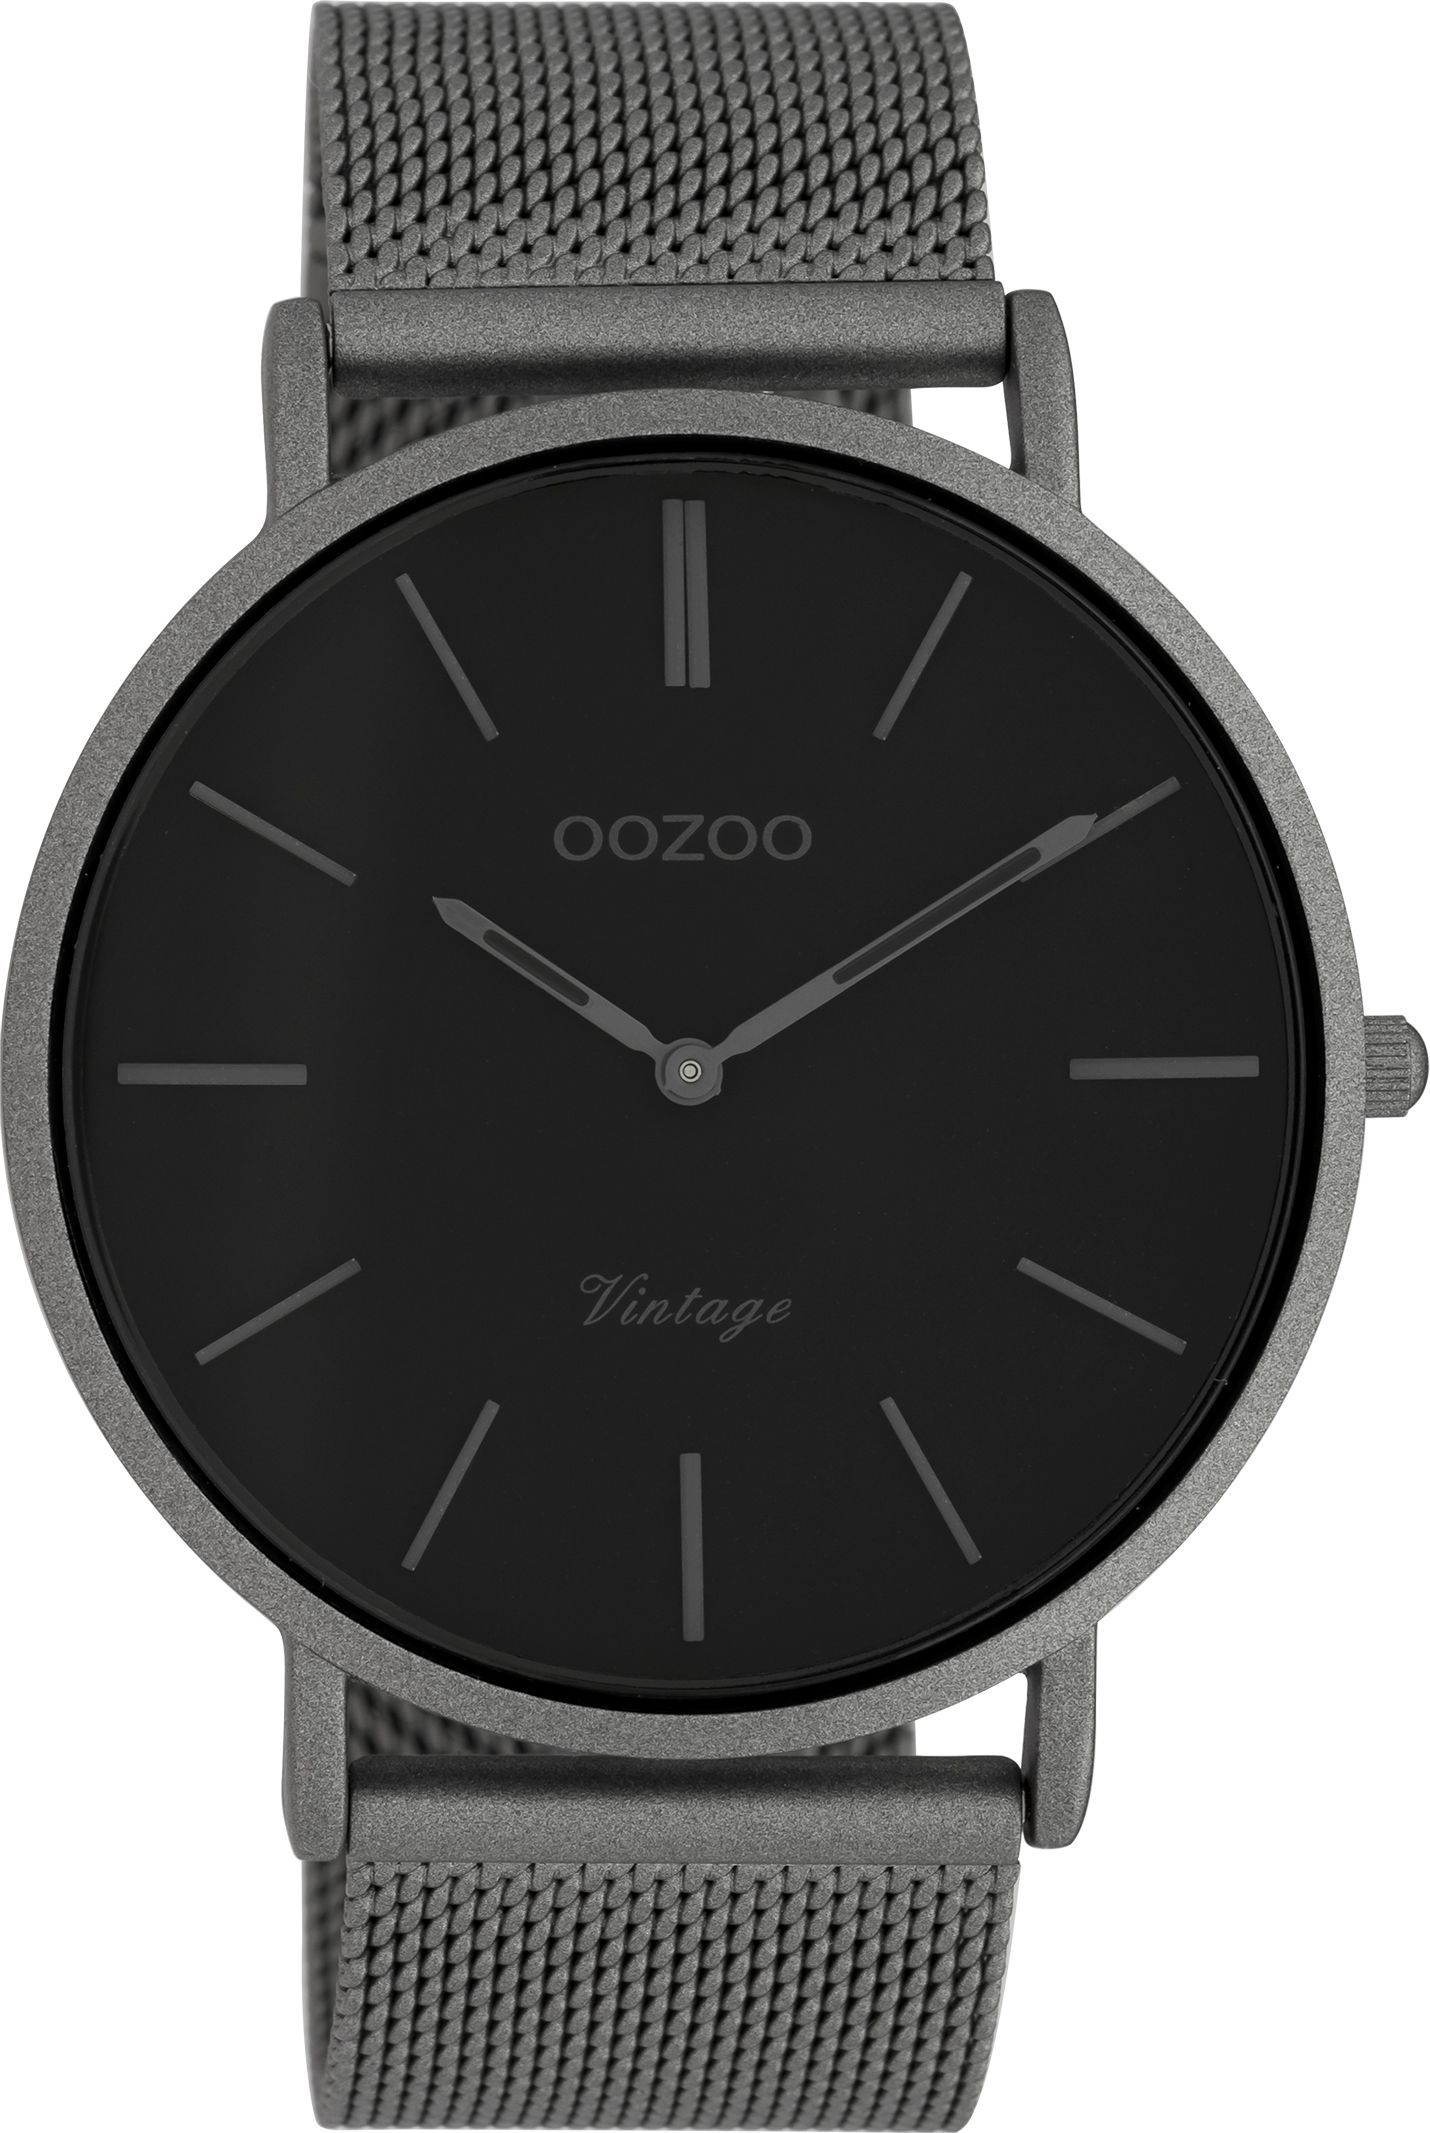 OOZOO Vintage C9928